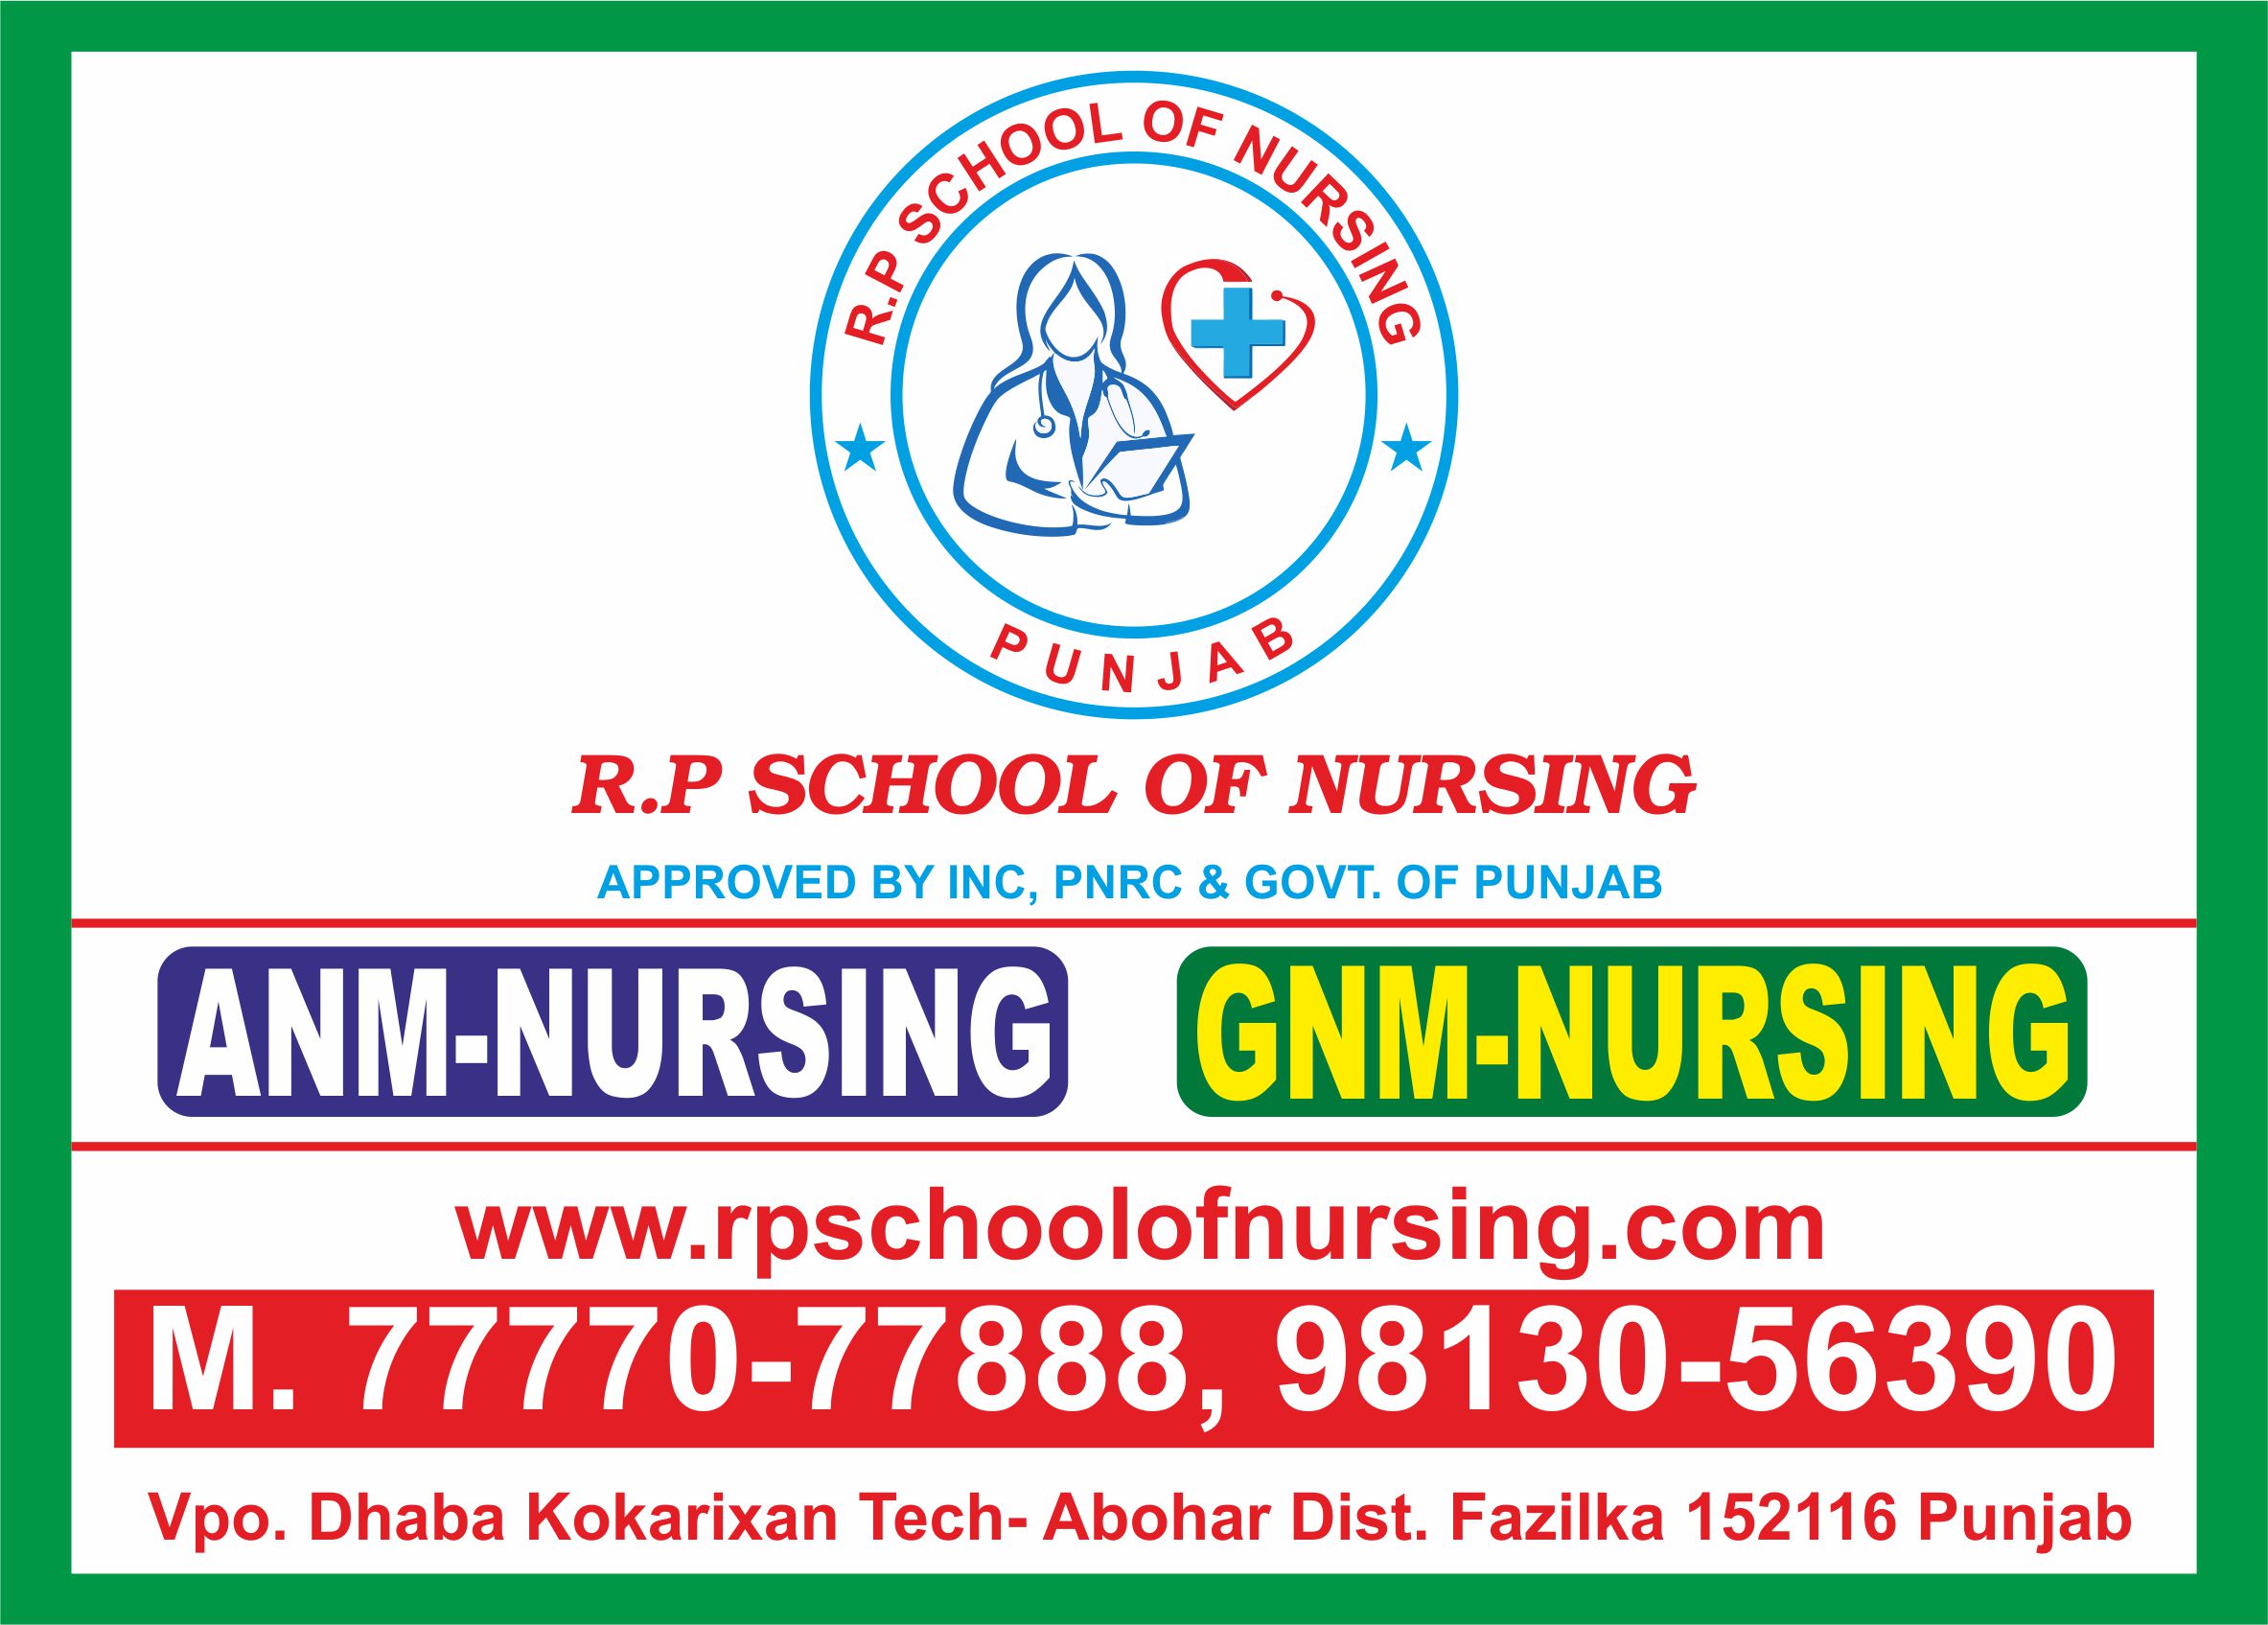 RP School Of Nursing Image Png, Jpg Images